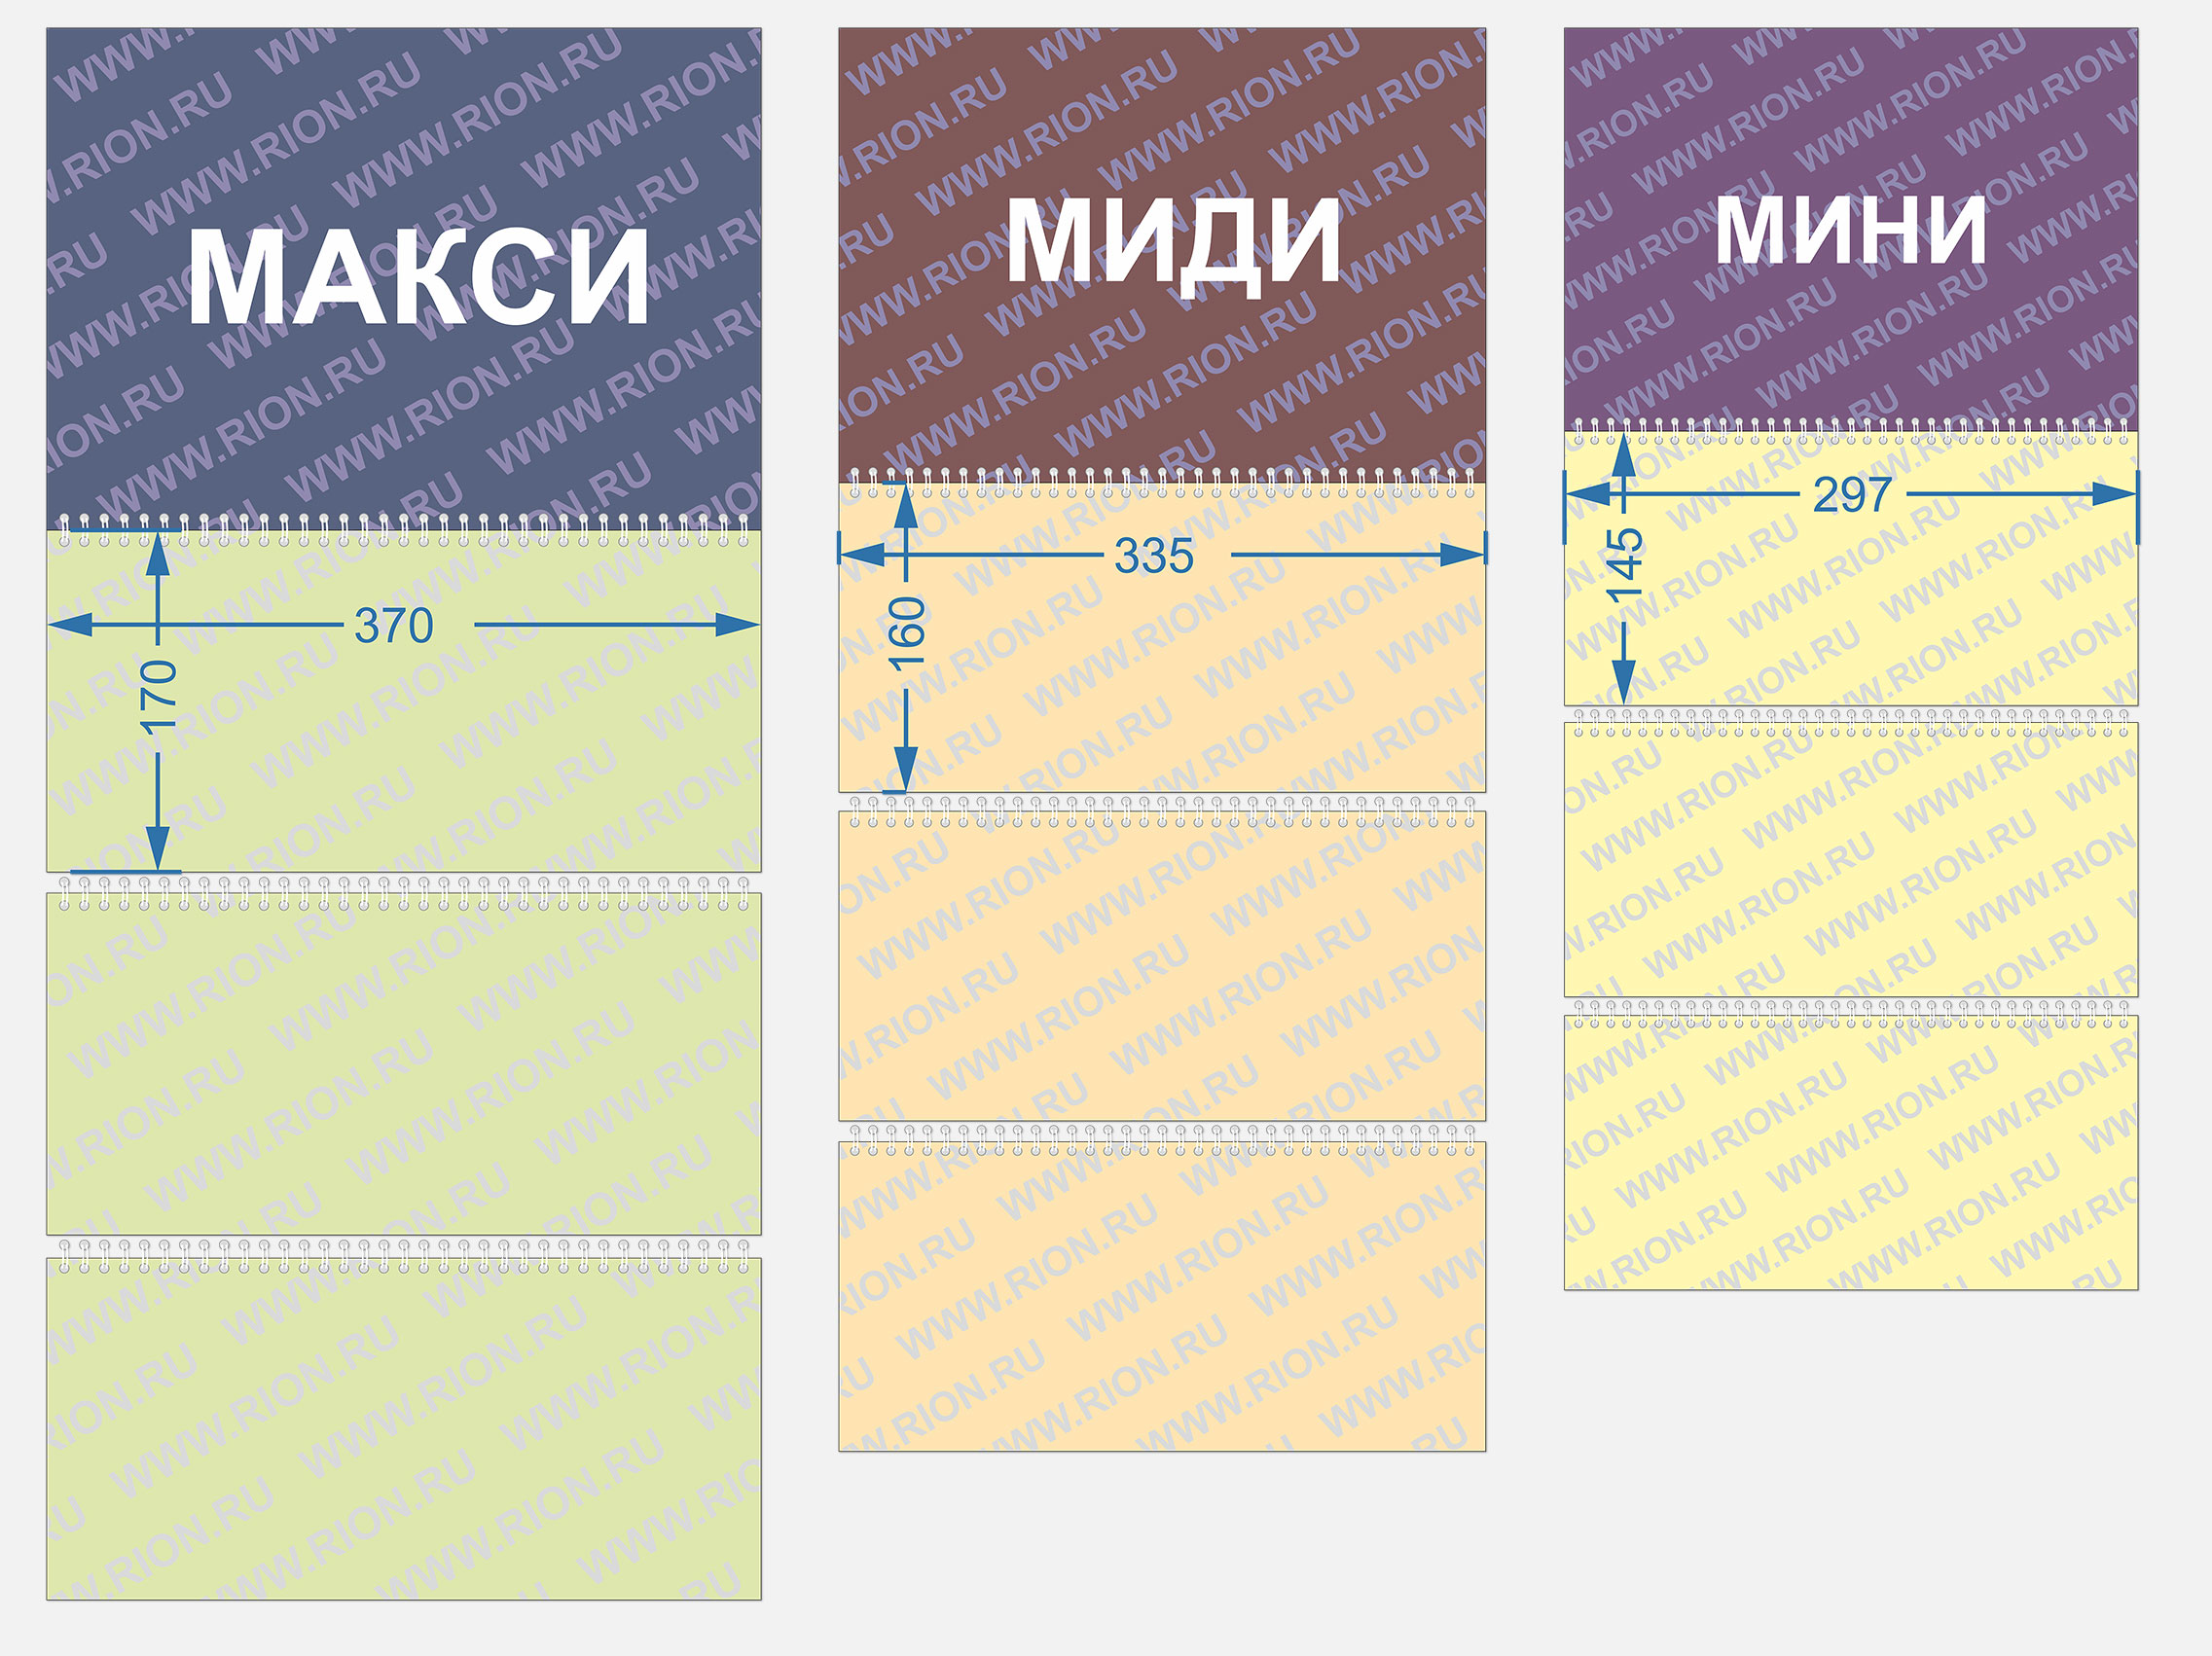 Соотношение размеров календарей мини/миди/макси